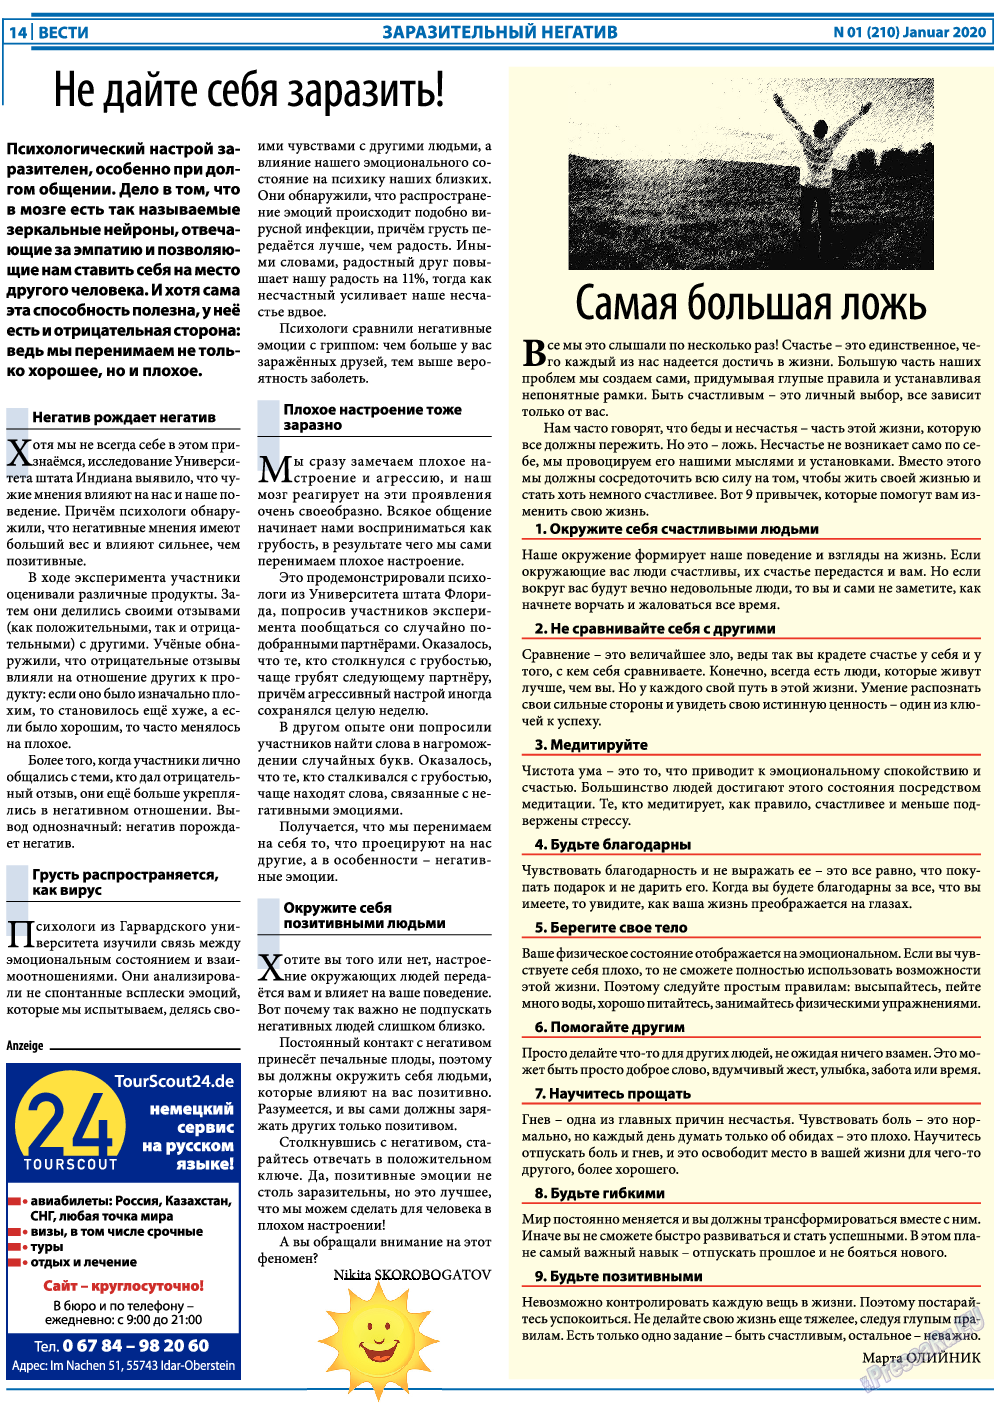 Вести, газета. 2020 №1 стр.14